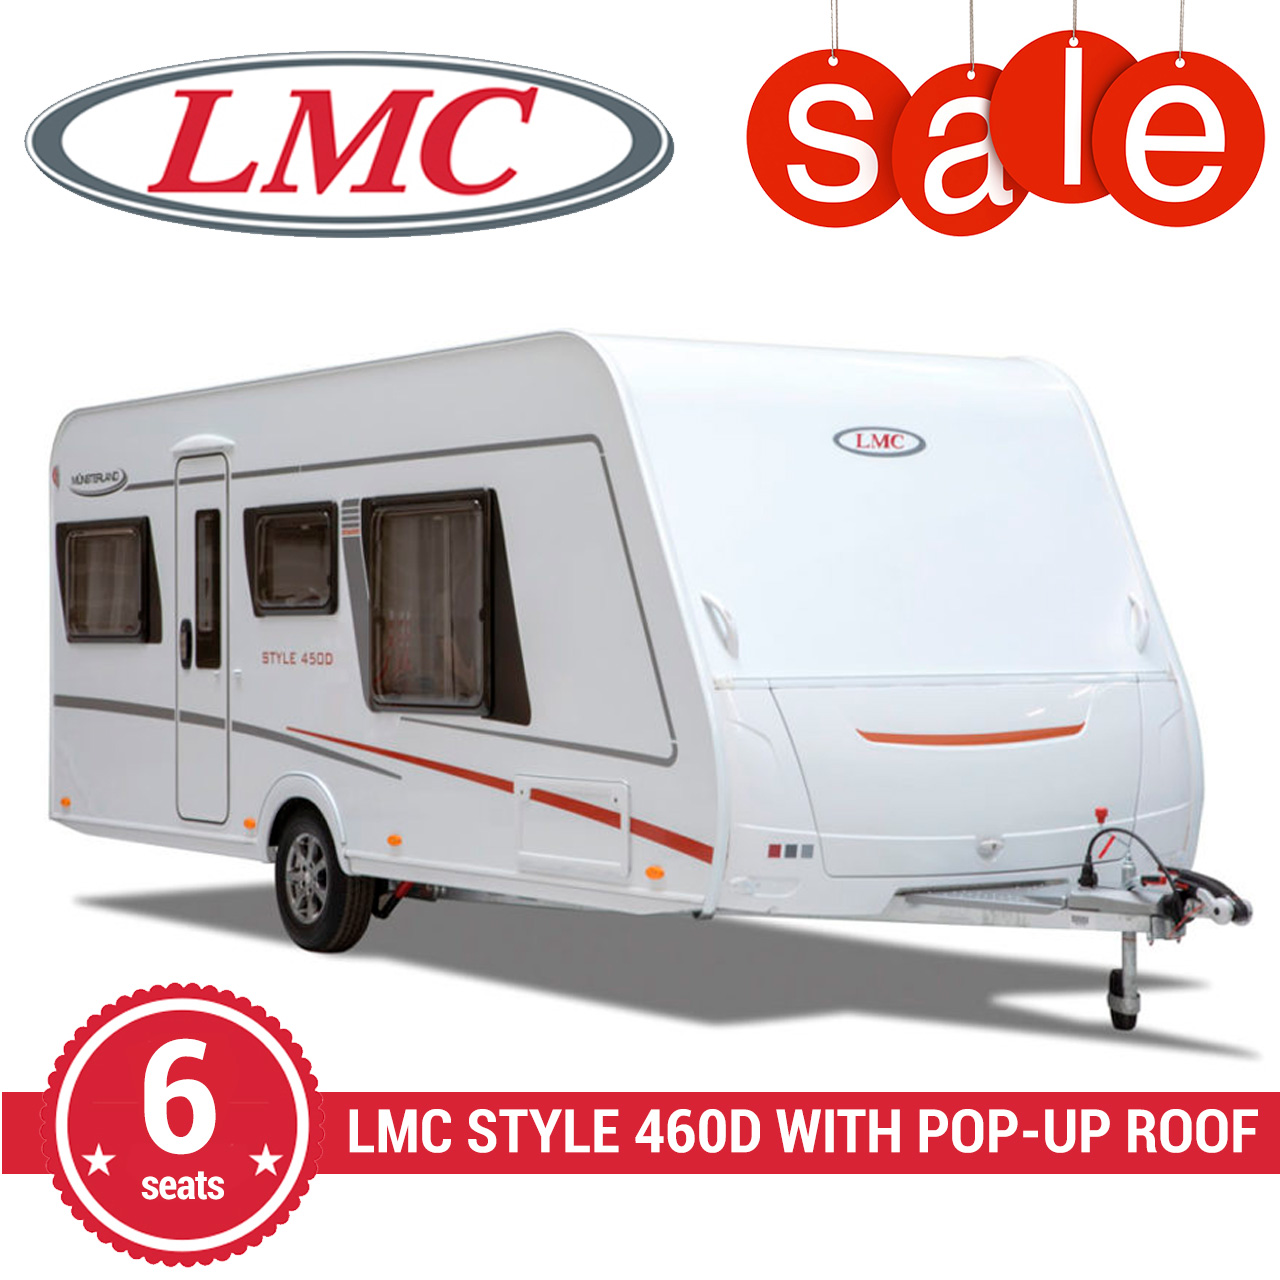 LMC-Style-460D-SALE-square